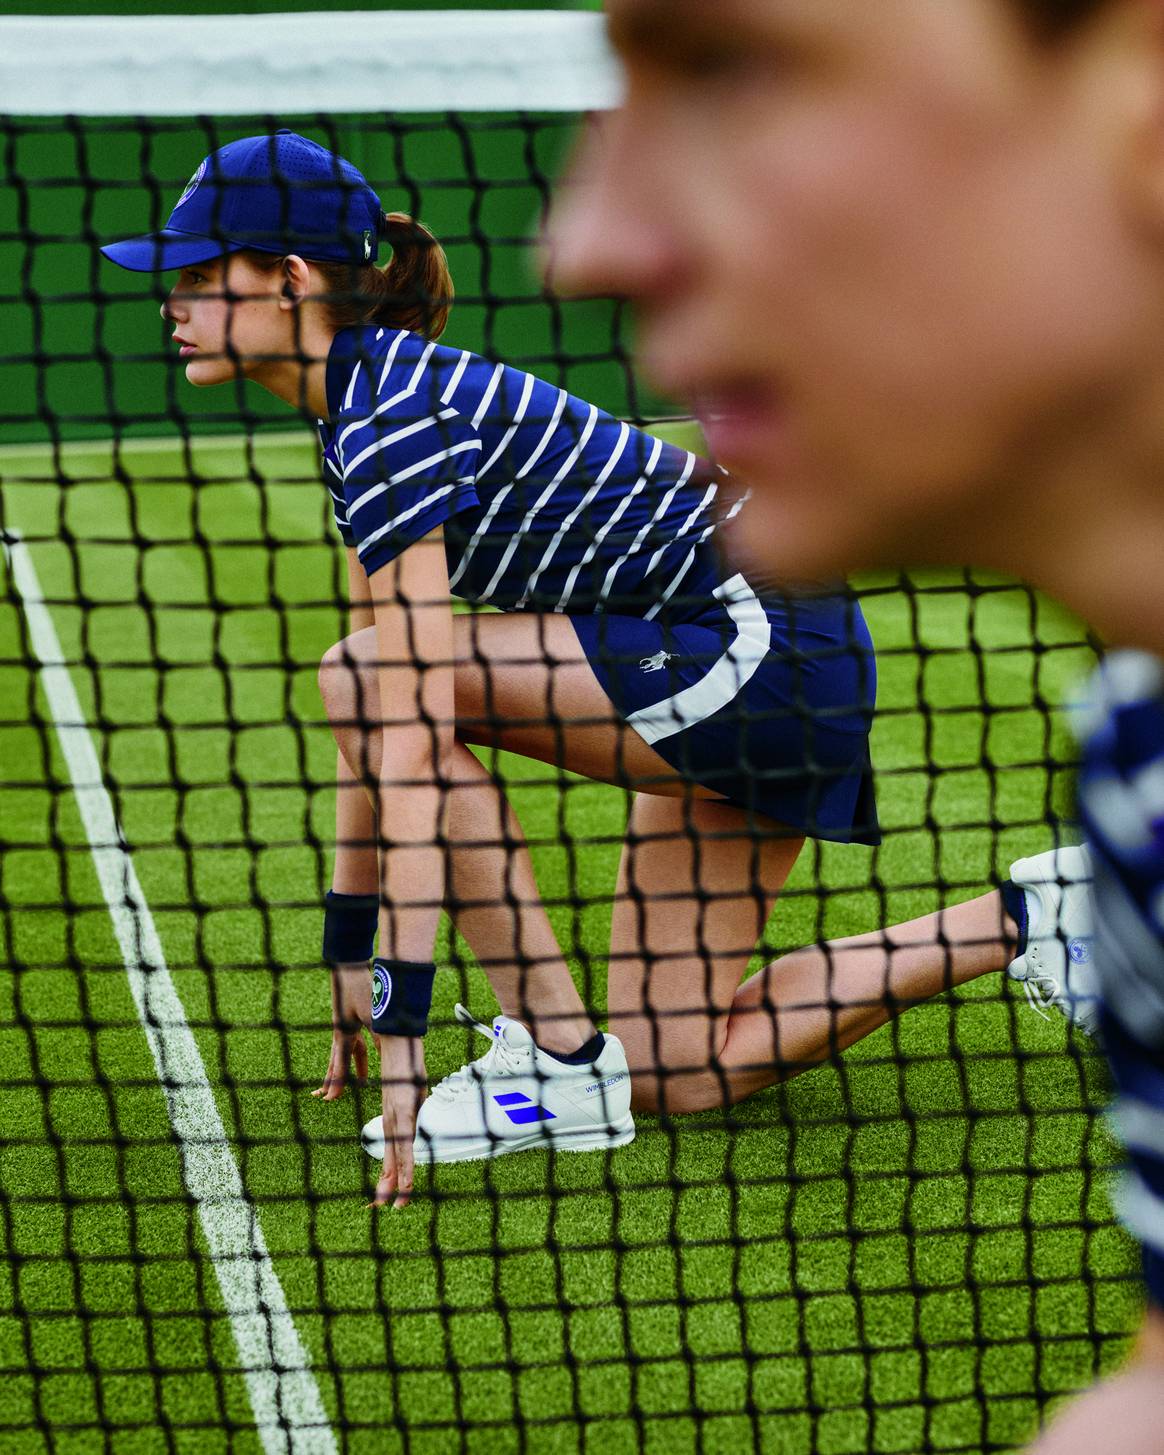 Image: Wimbledon / Polo Ralph Lauren